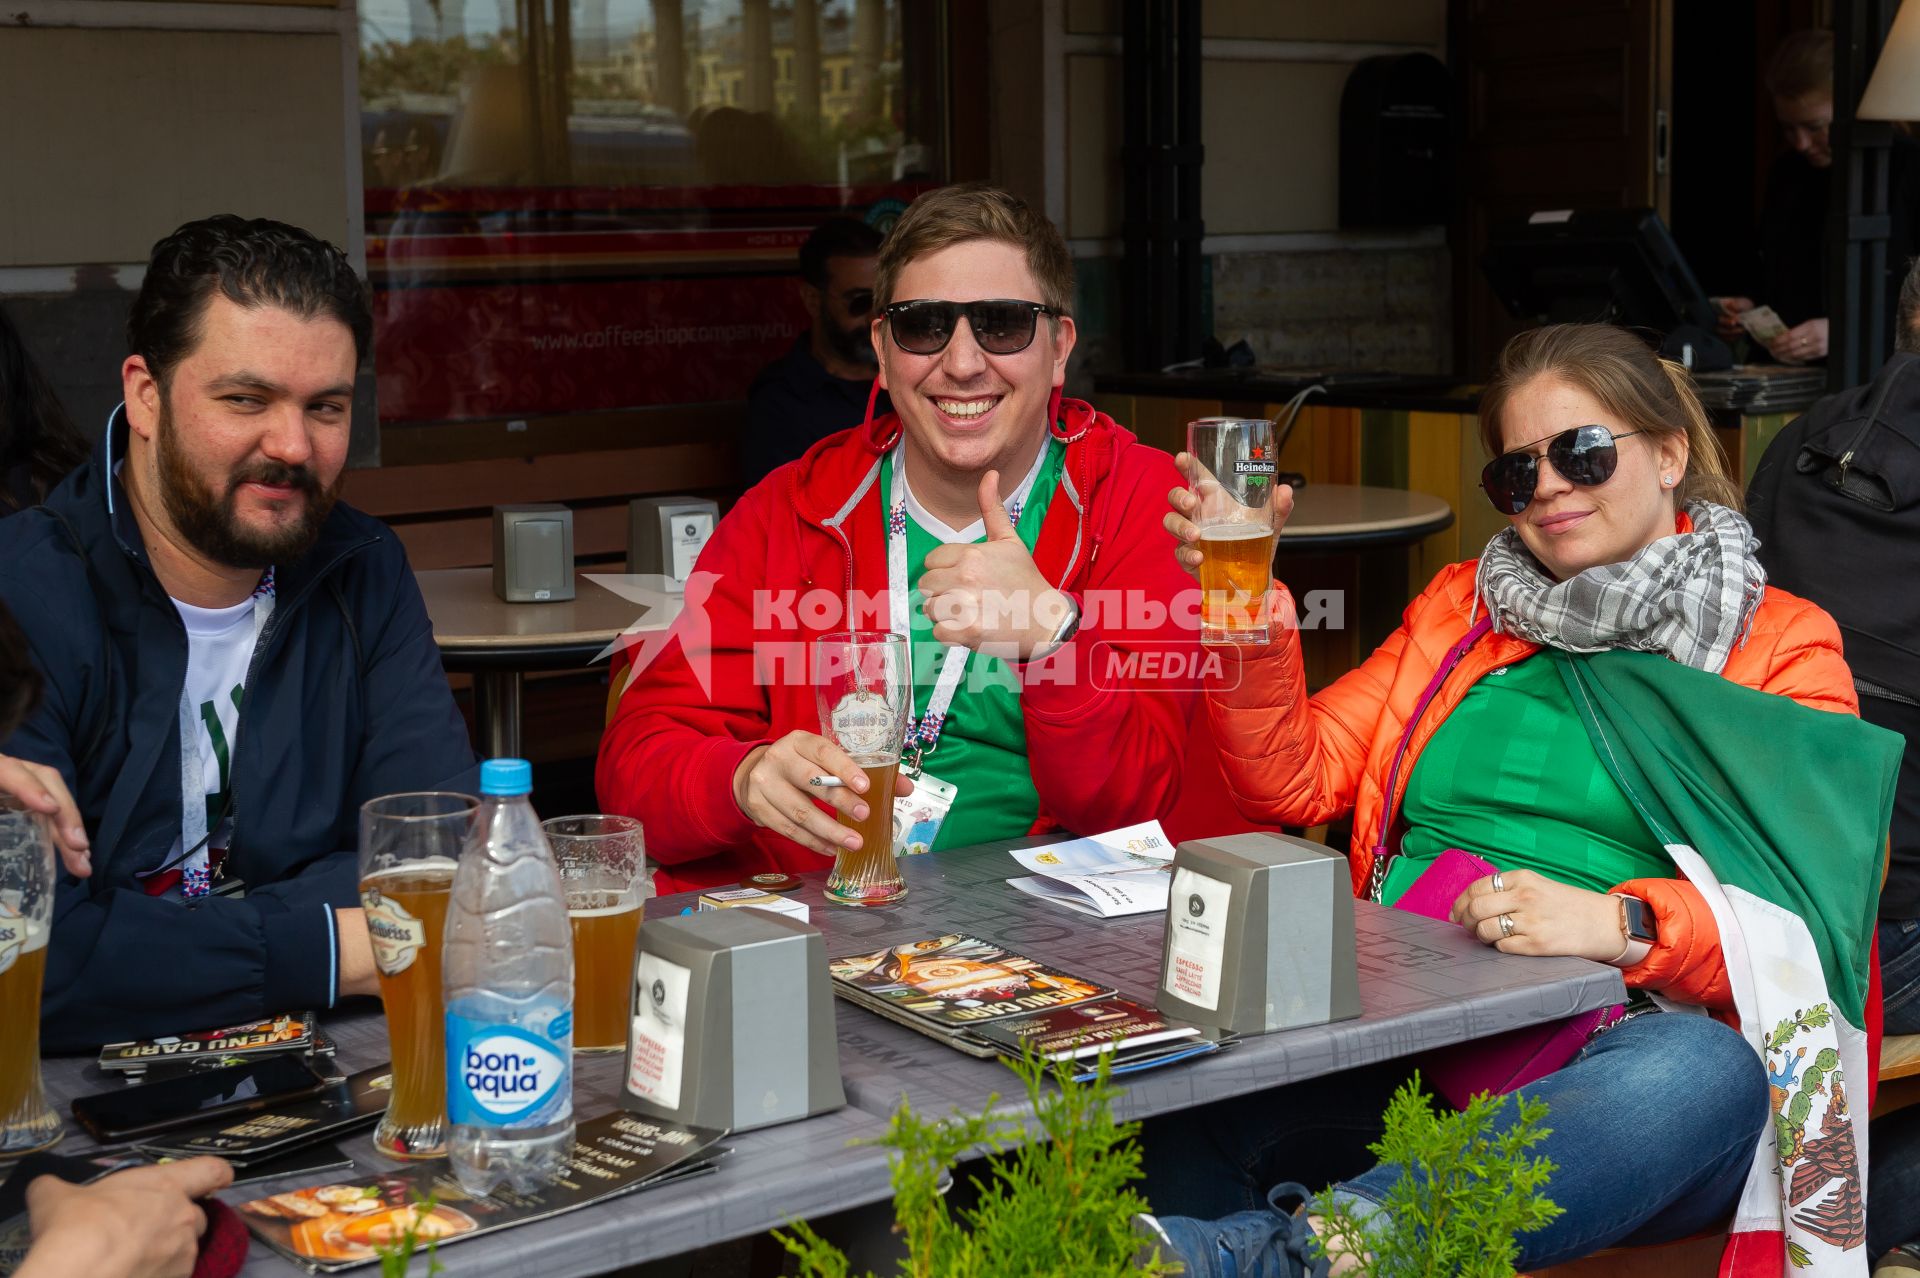 Санкт-Петербург. Болельщики в кафе во время проведения чемпионата мира по футболу - 2018.